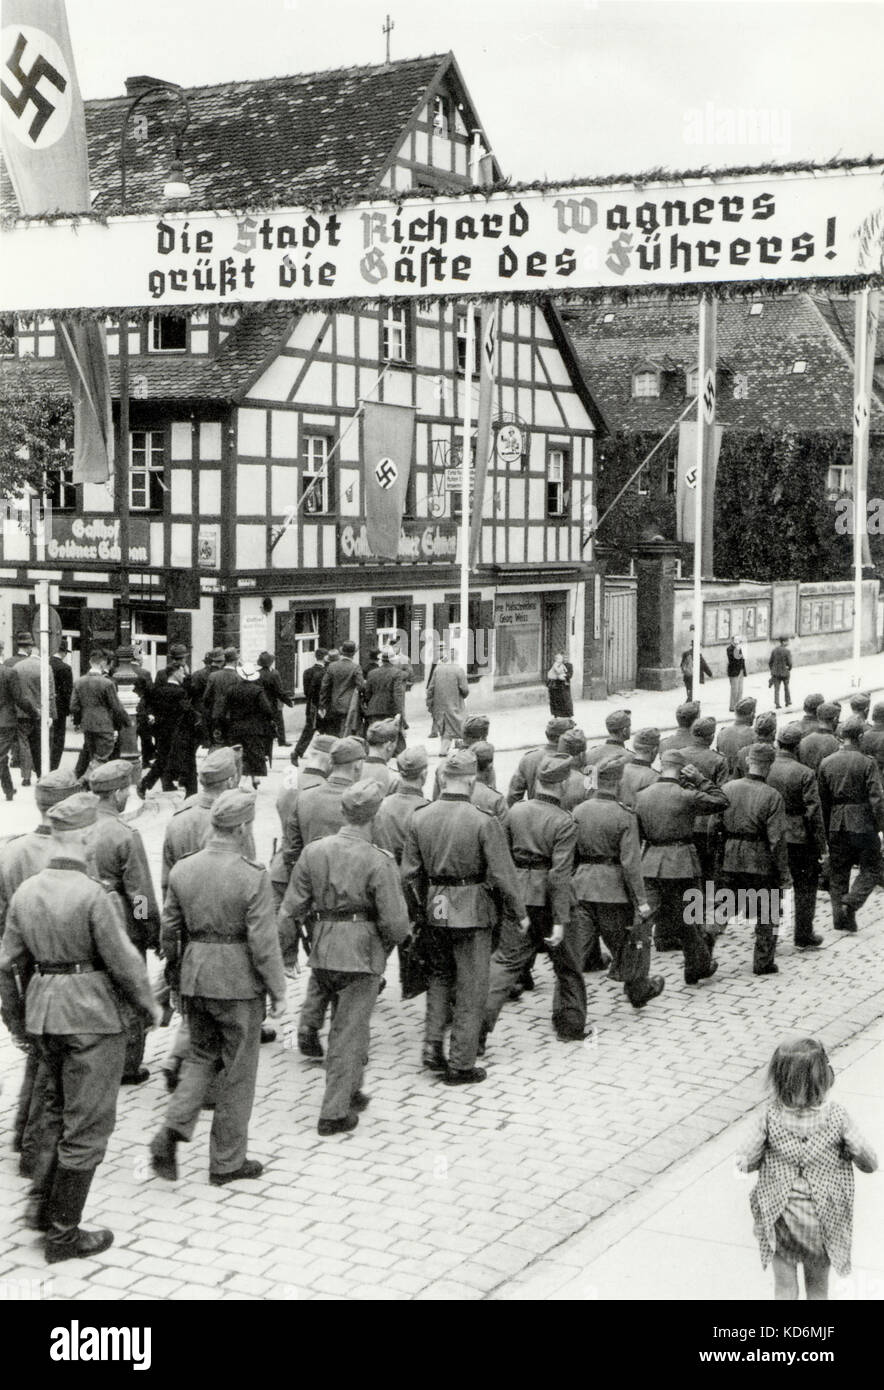 Bayreuth unter der Naziherrschaft mit Soldaten marschieren durch IT- und Hakenkreuze auf Anzeige 'Die Stadt Richard Wagners, dass Sie sterben gafte des fuhrers', Wagner. Stockfoto